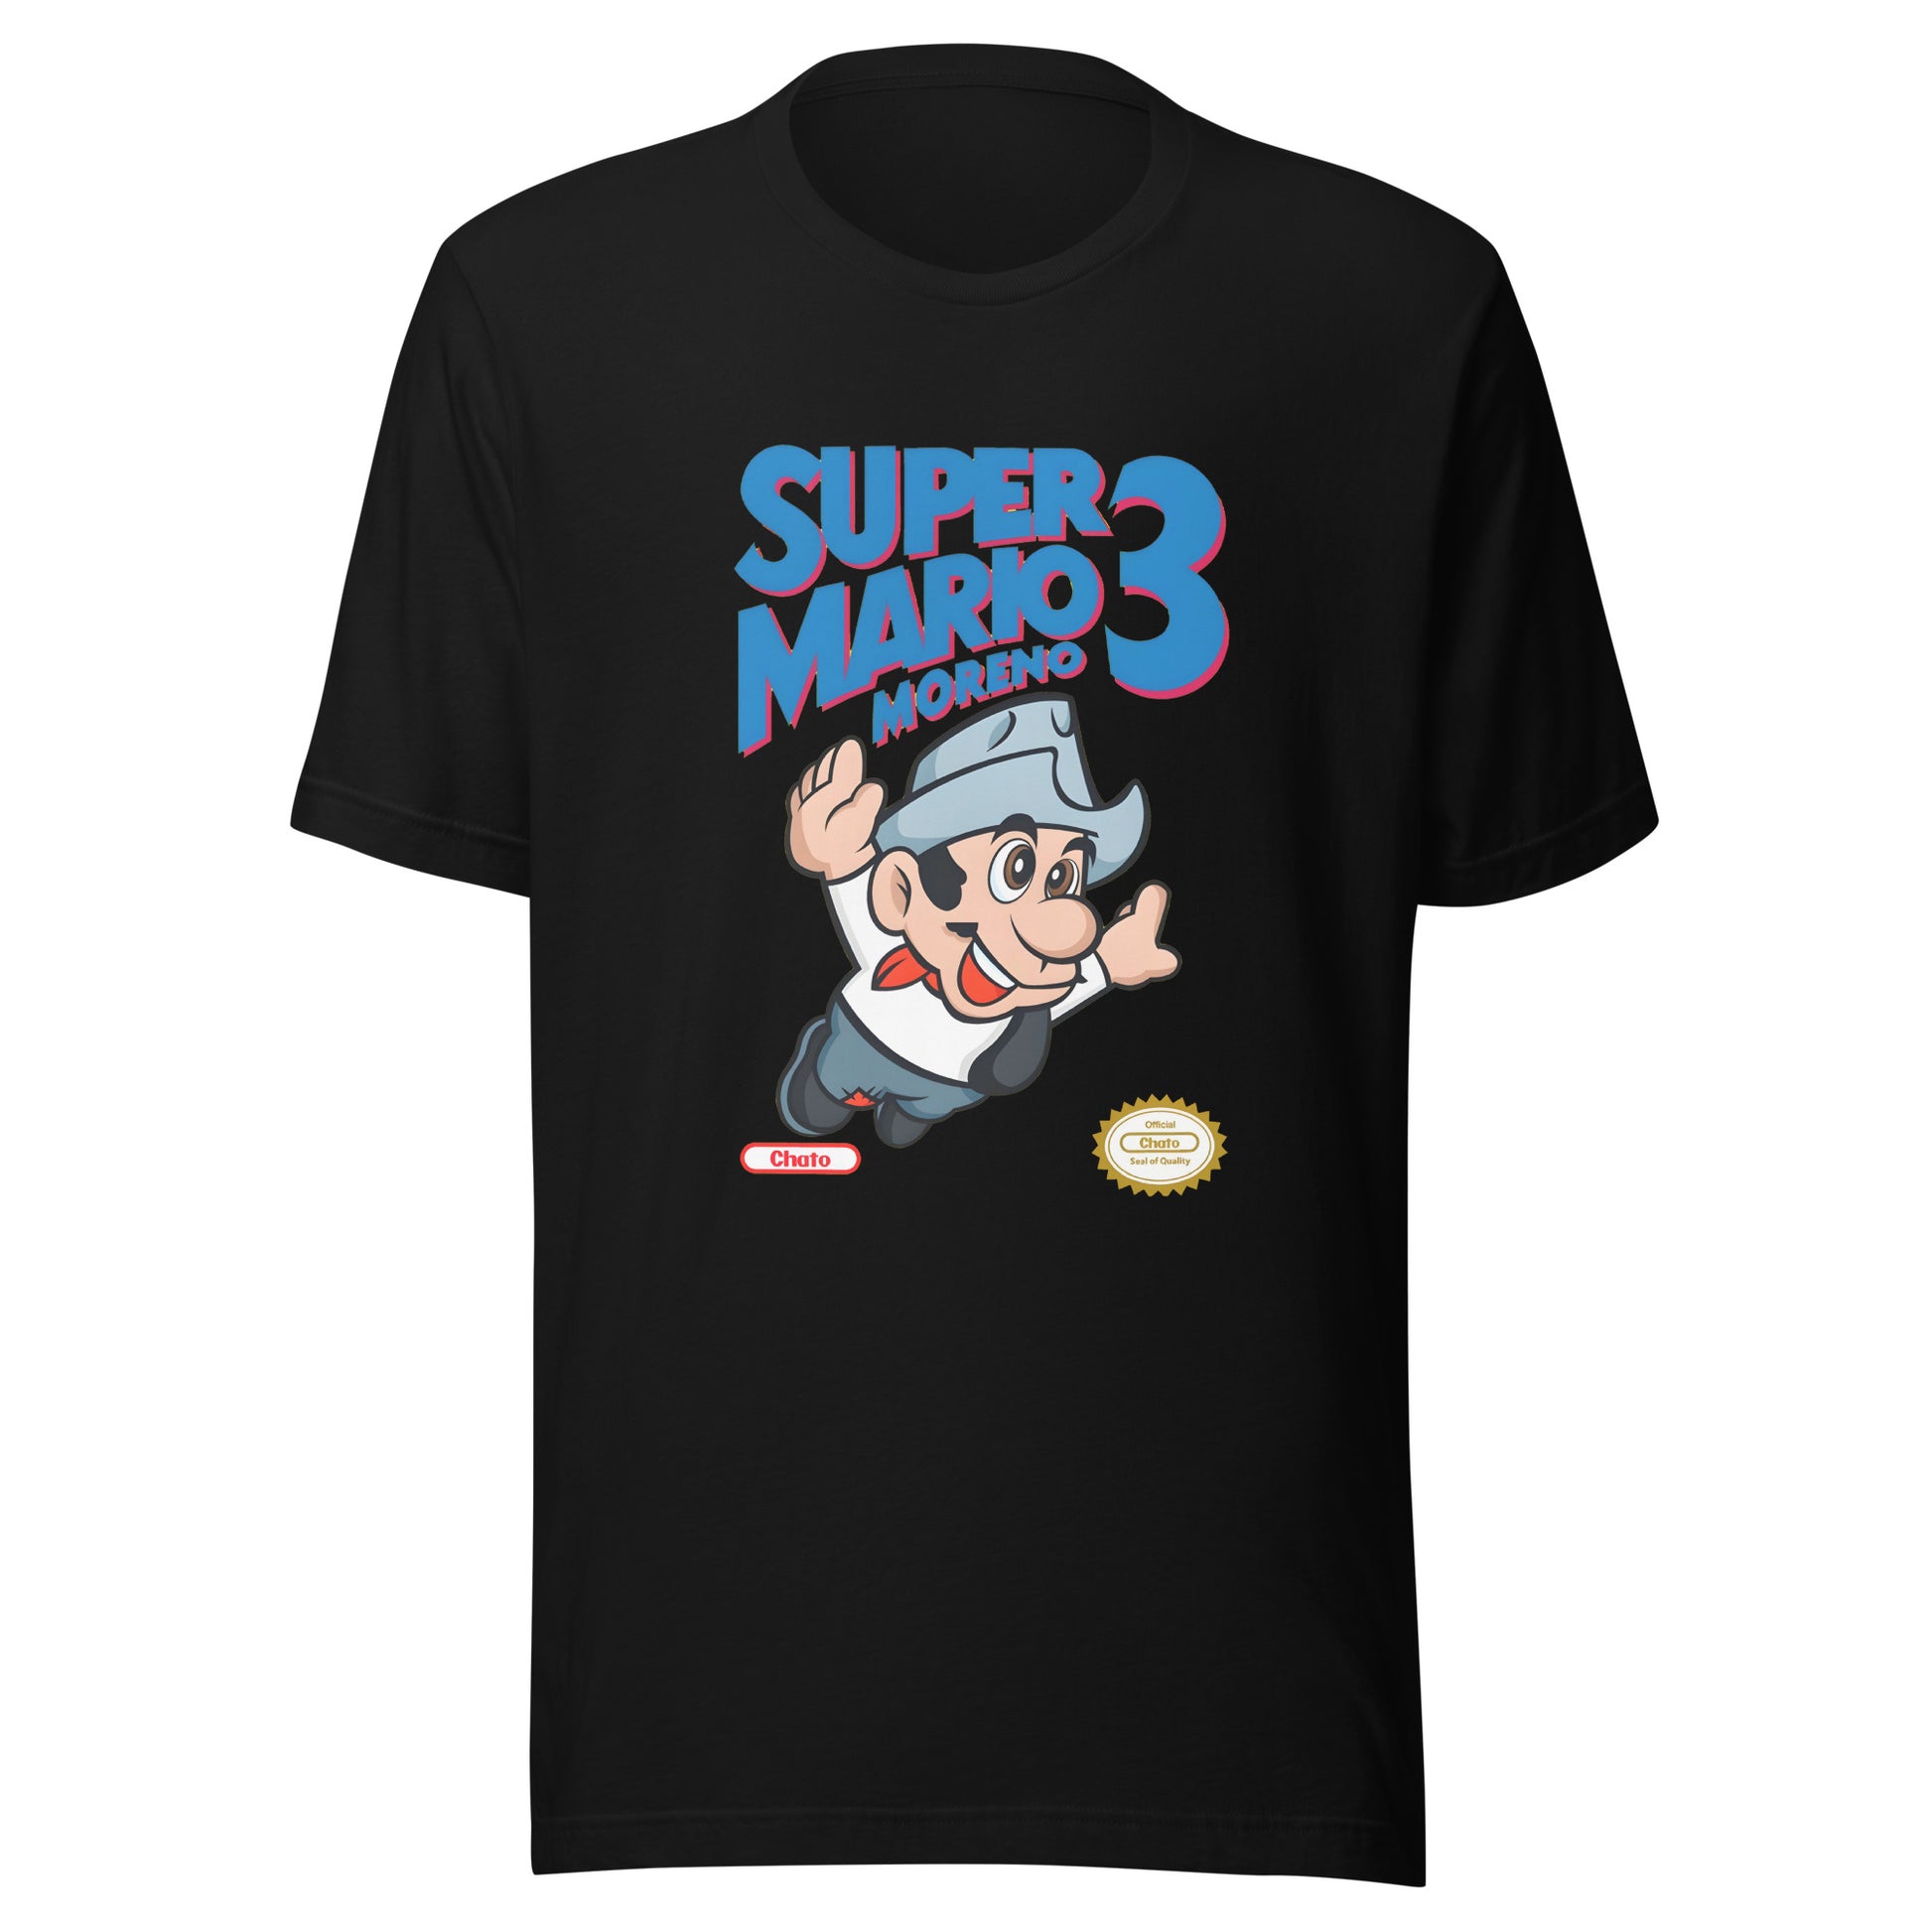 Camiseta de Super Mario Moreno, Es un producto de ropa que es ideal para los fanáticos de Cantinflas y Mario Bross que deseen mostrar su amor.